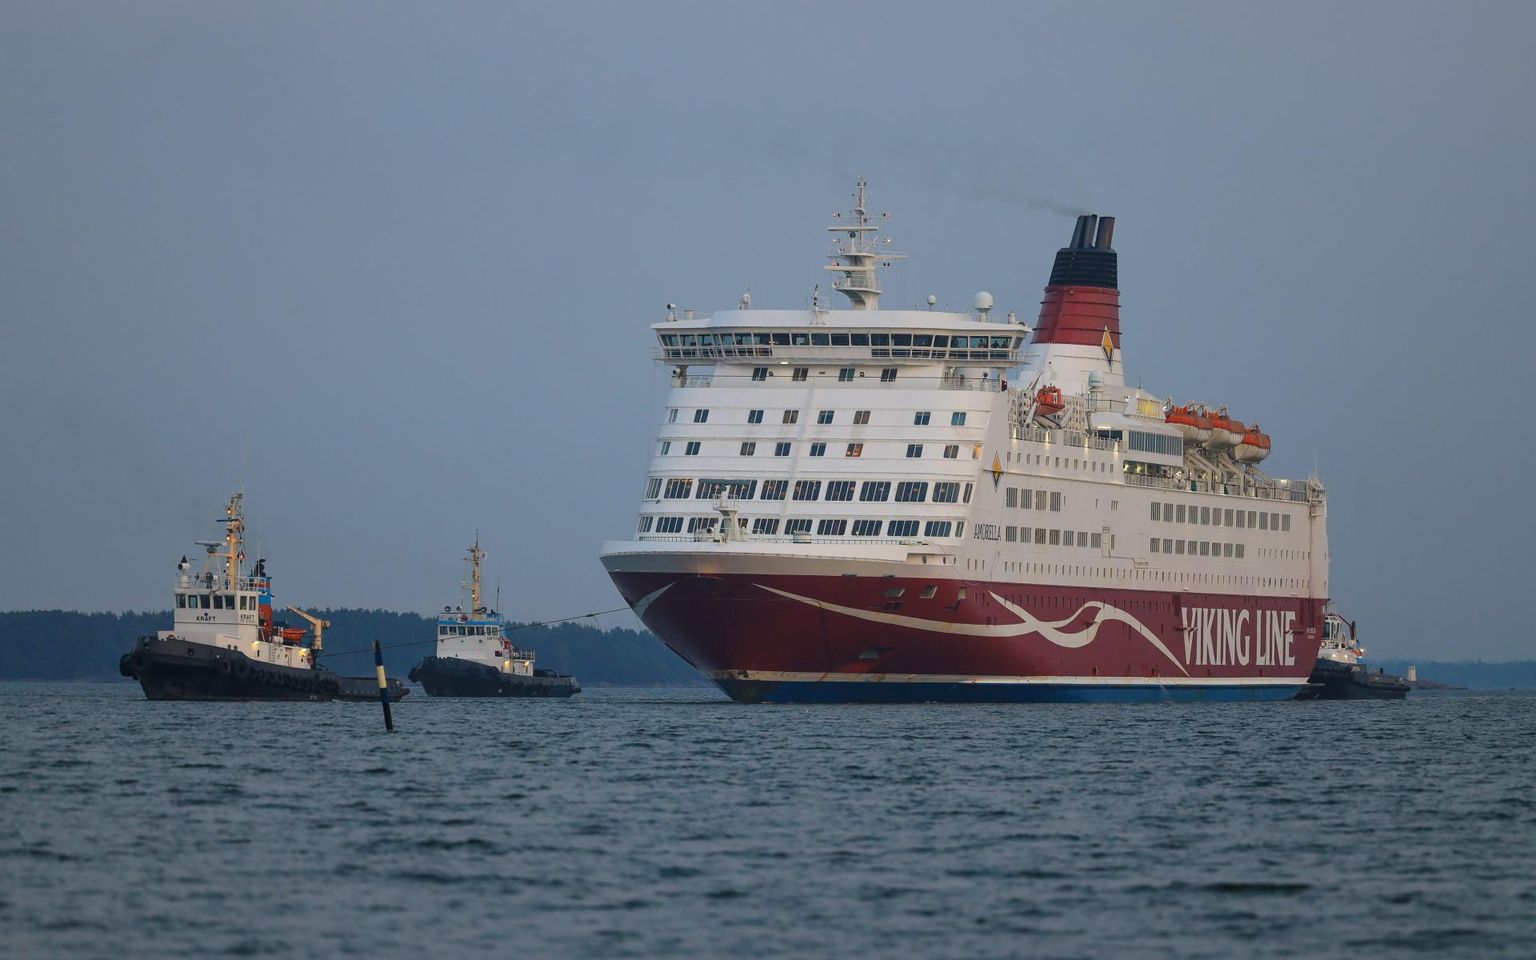 Viking Line’i parvlaeva Amorella põhjapuutest tekkinud avariiolukord tekitas segaduse lasti päästekuludega.